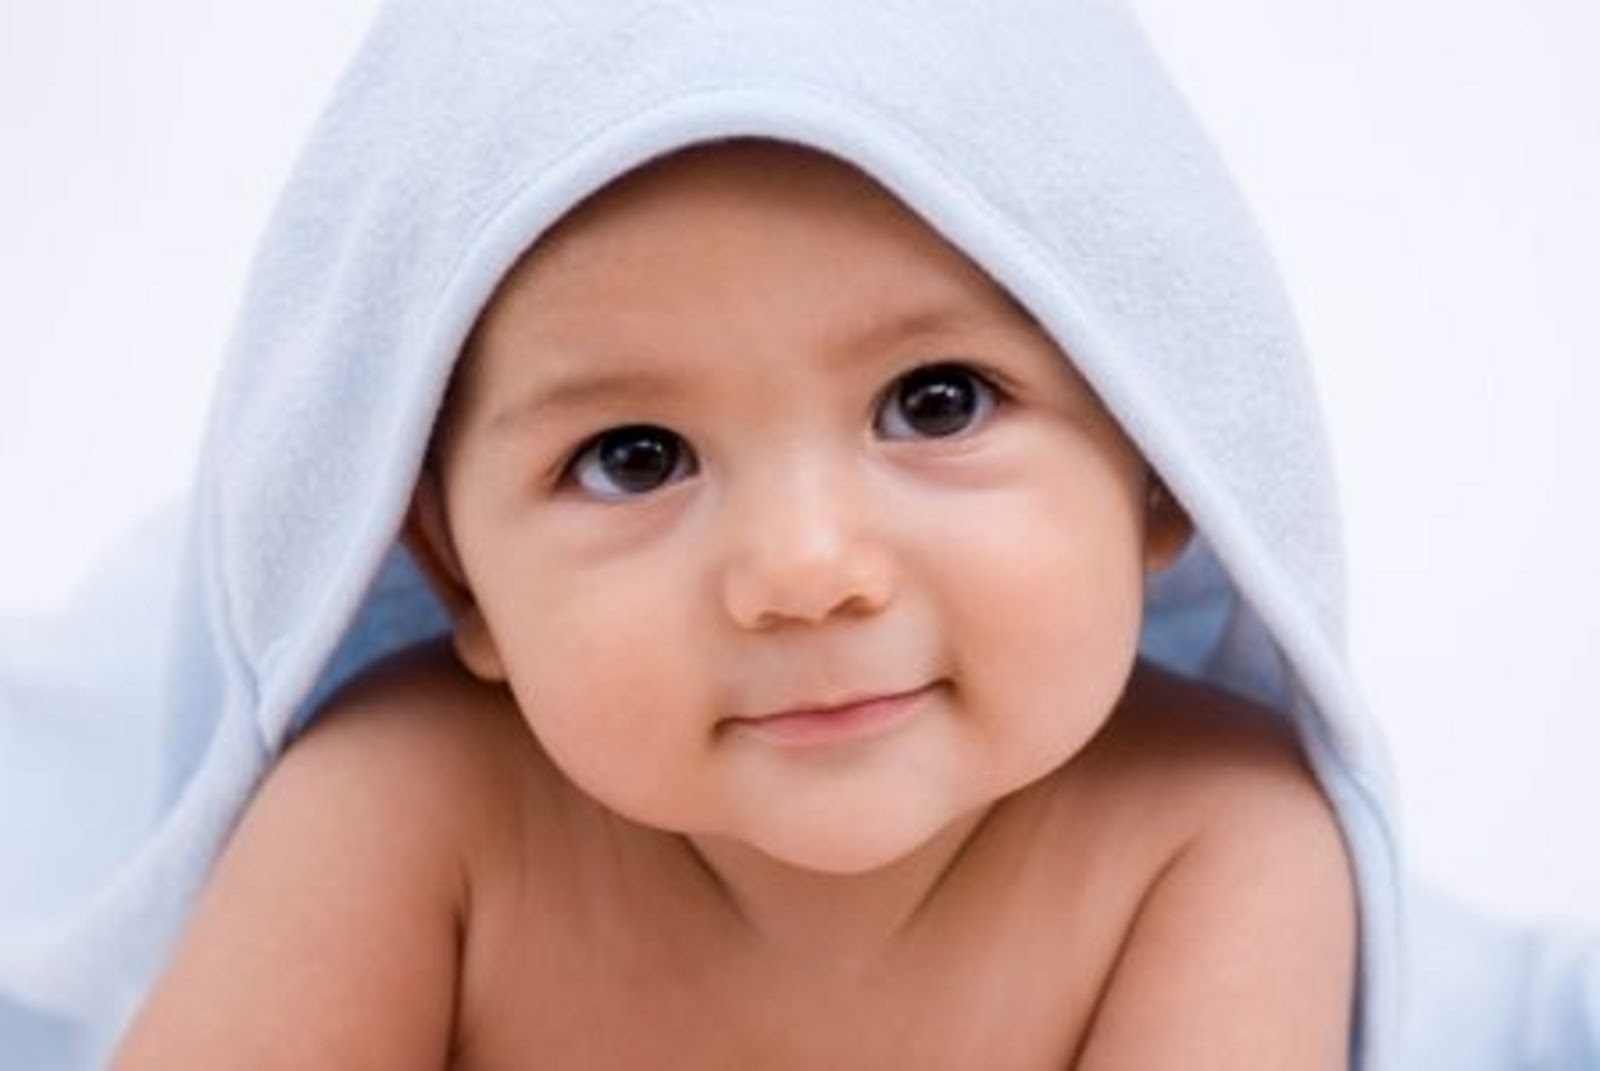 Gambar Bayi Bayi Lucu Dan Imut Si Gambar